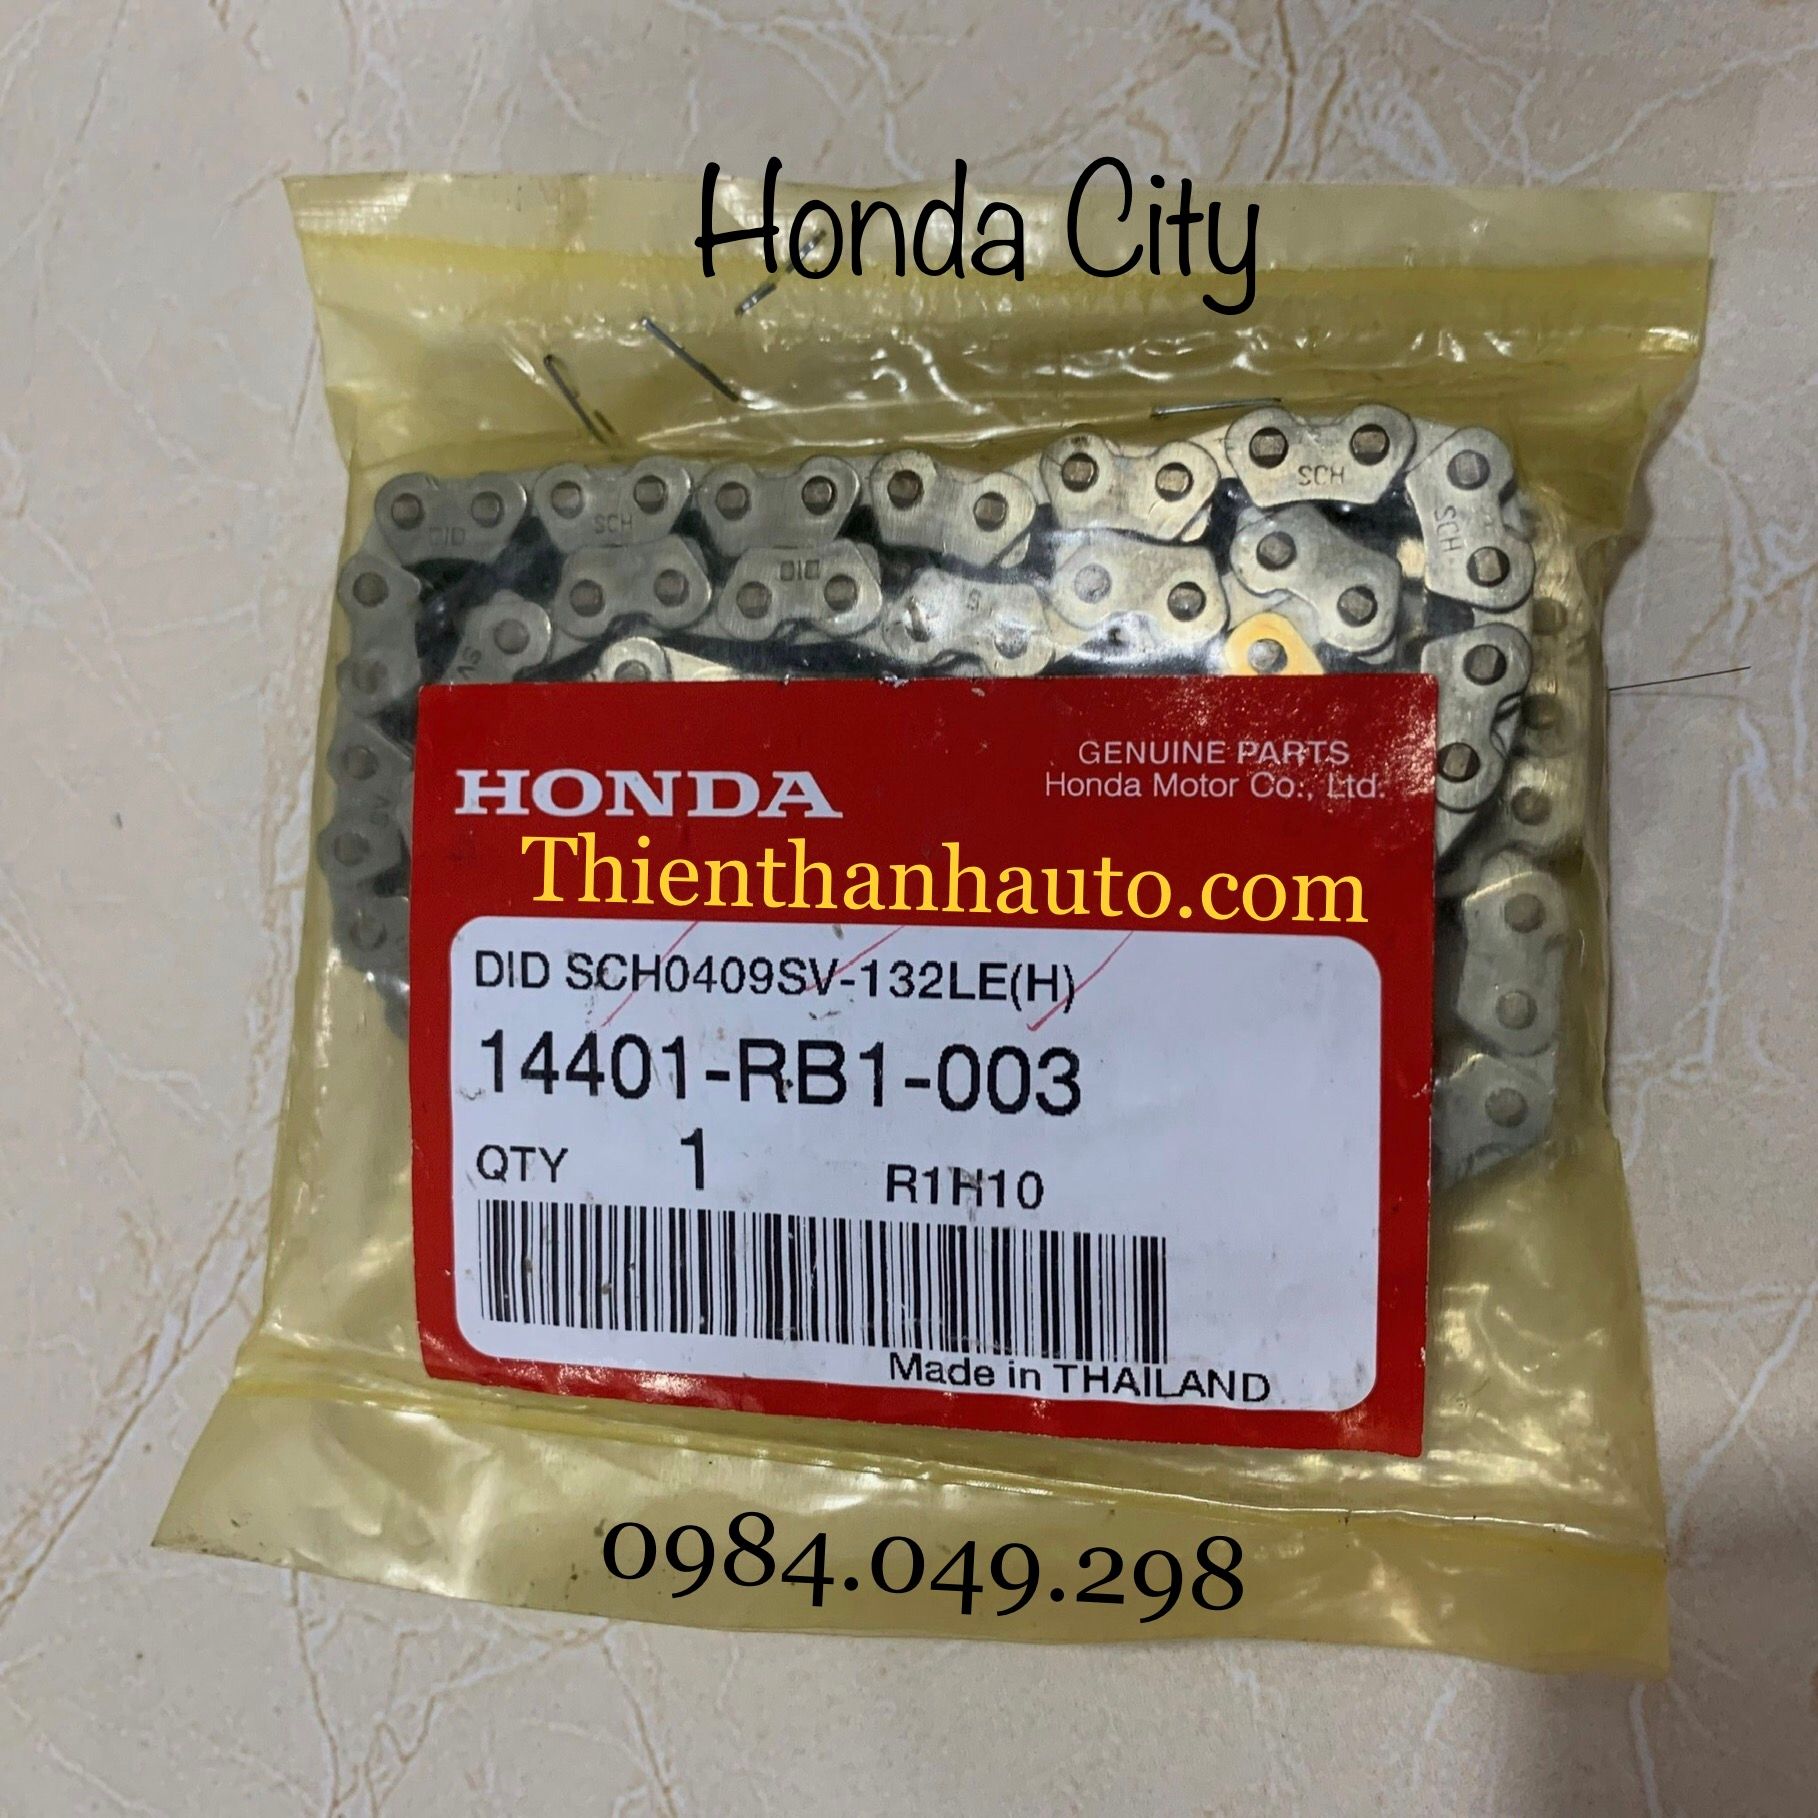 Xích cam Honda City 2013-2014 chính hãng - Phụ tùng ô tô Thiên Thanh